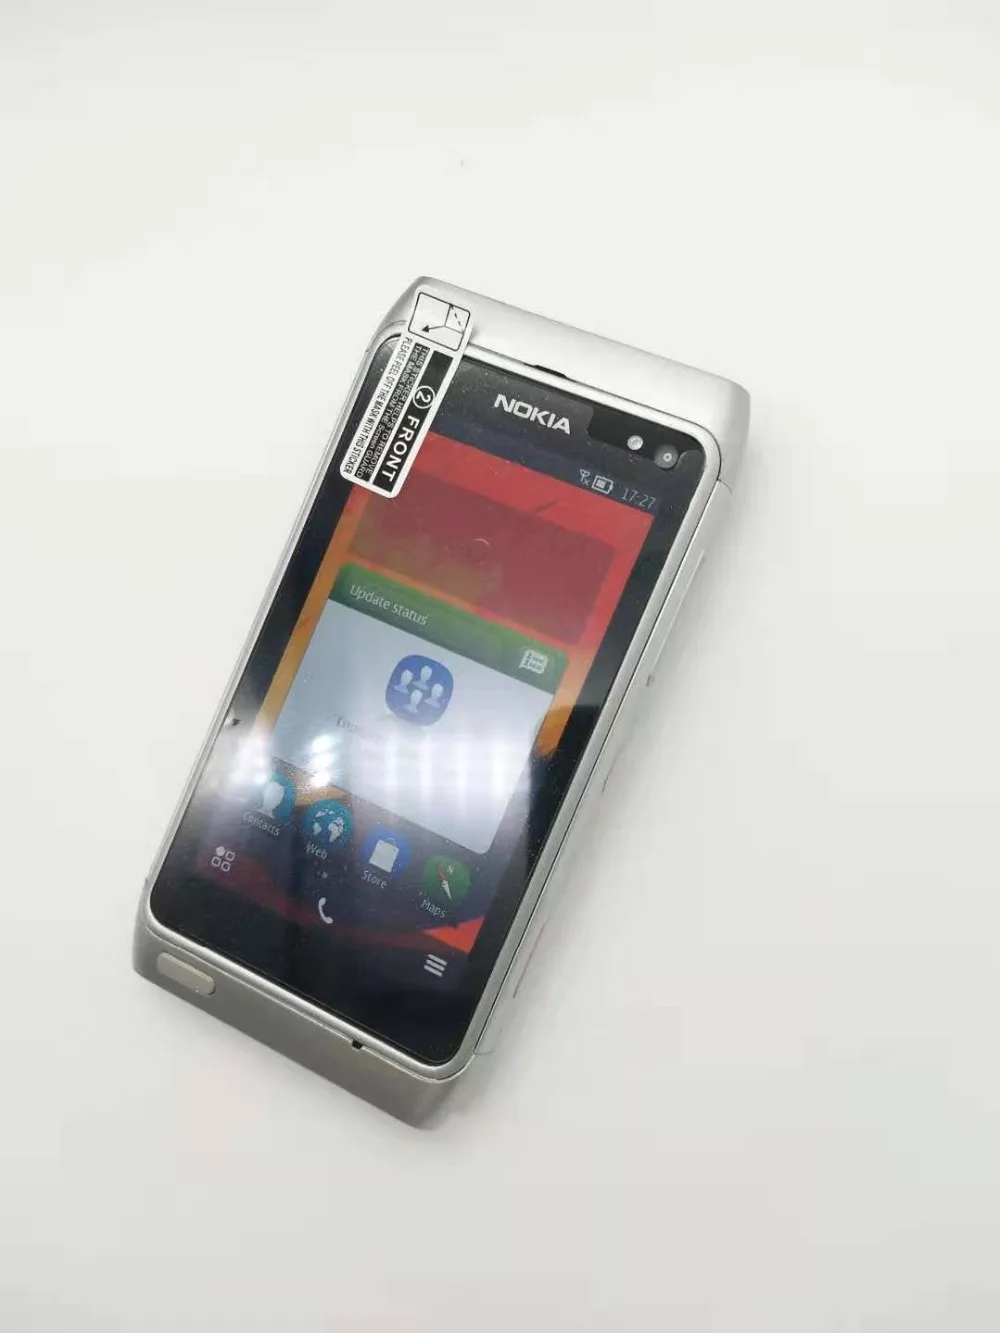 Nokia N8 мобильный телефон 3g wifi gps 12MP камера 3," сенсорный экран 16 Гб хранилище дешевый телефон Восстановленный